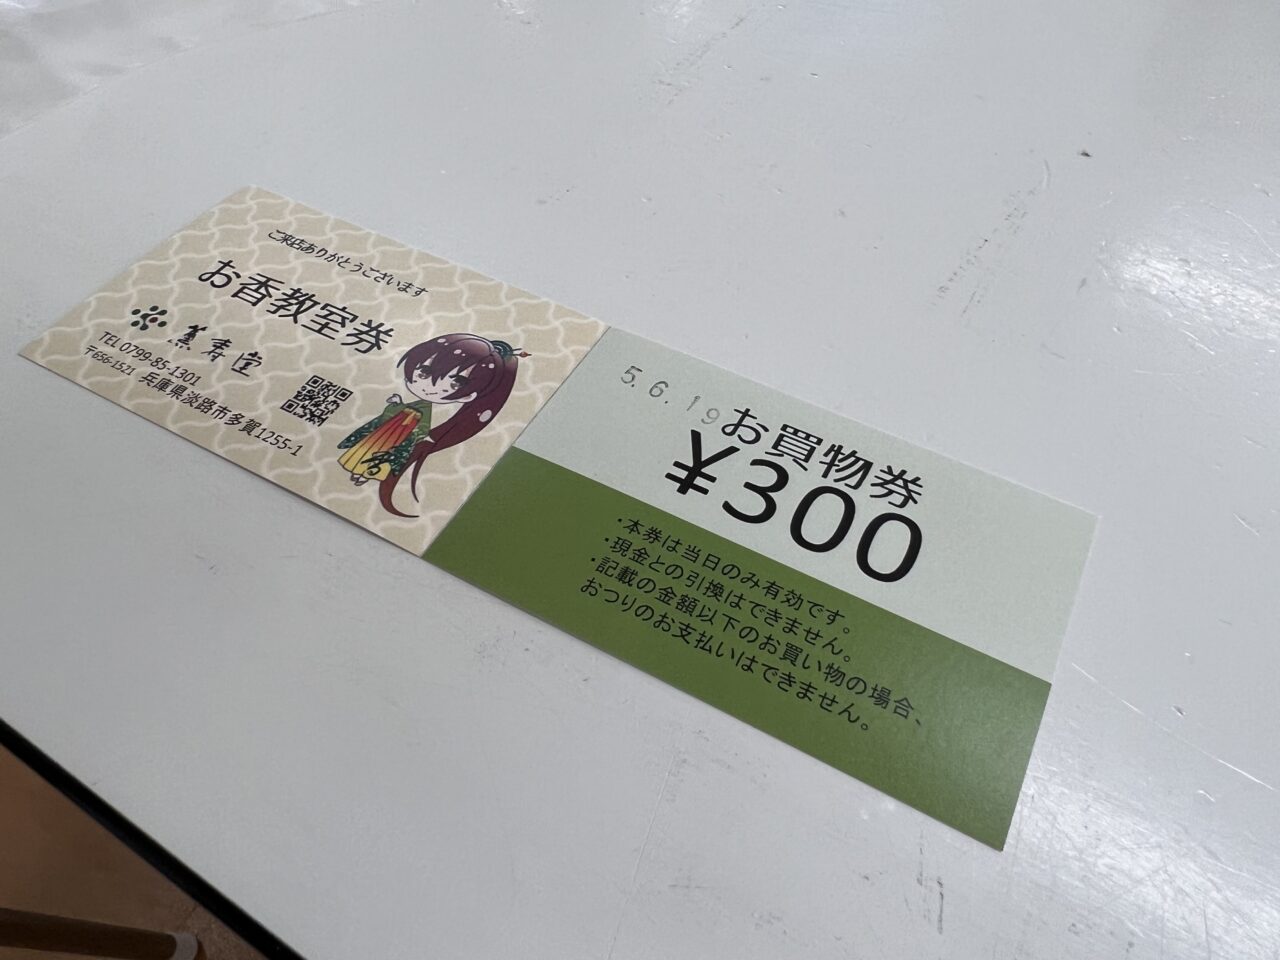 薫寿堂のお香作り体験の教室券とお買い物券です。